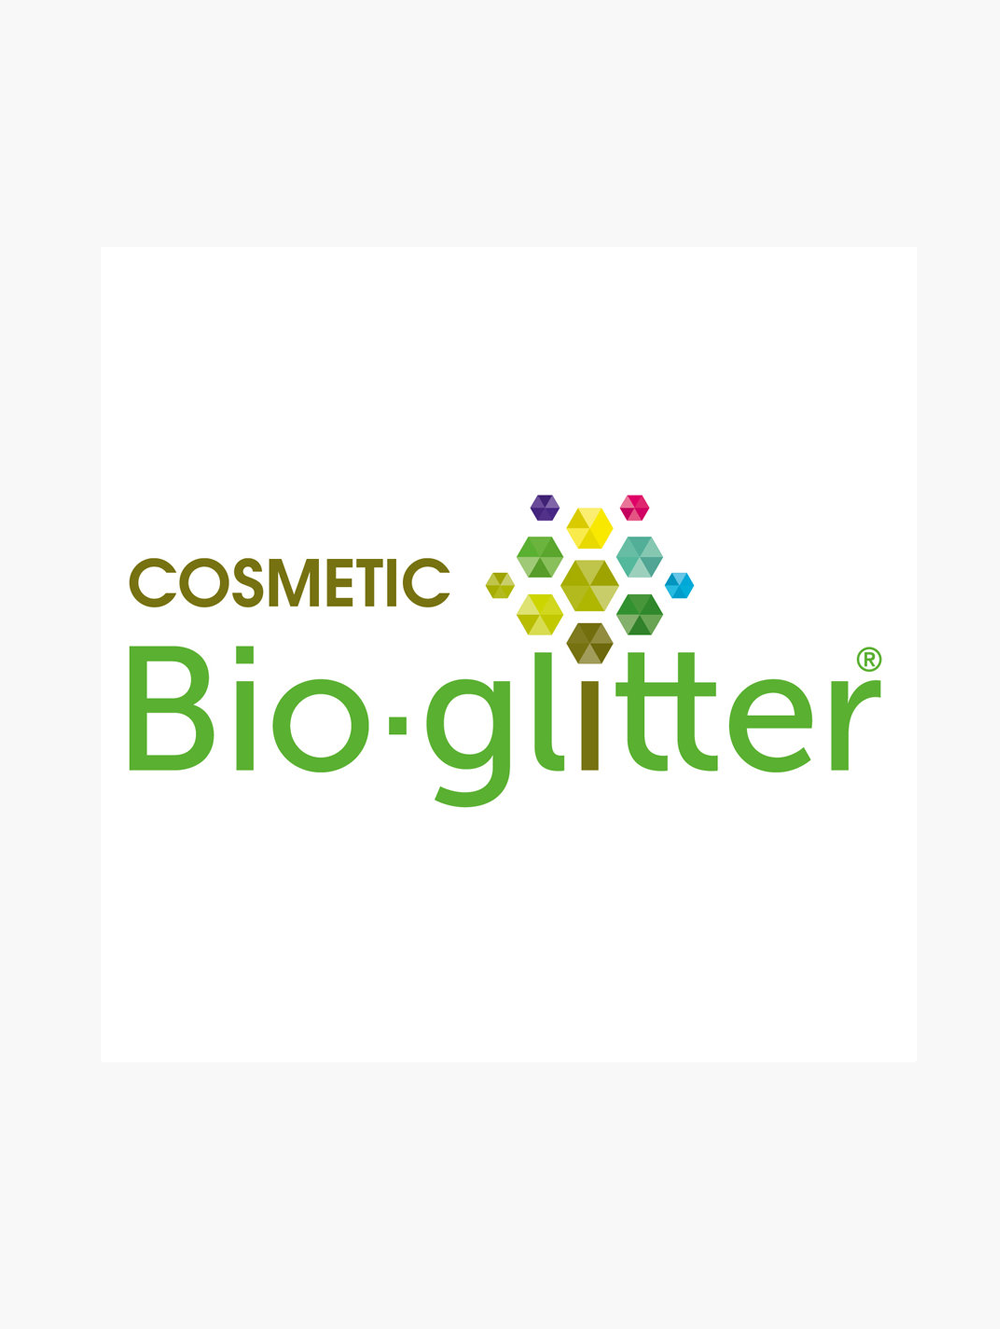 Label bioglitter certifiant l'origine végétale des paillettes